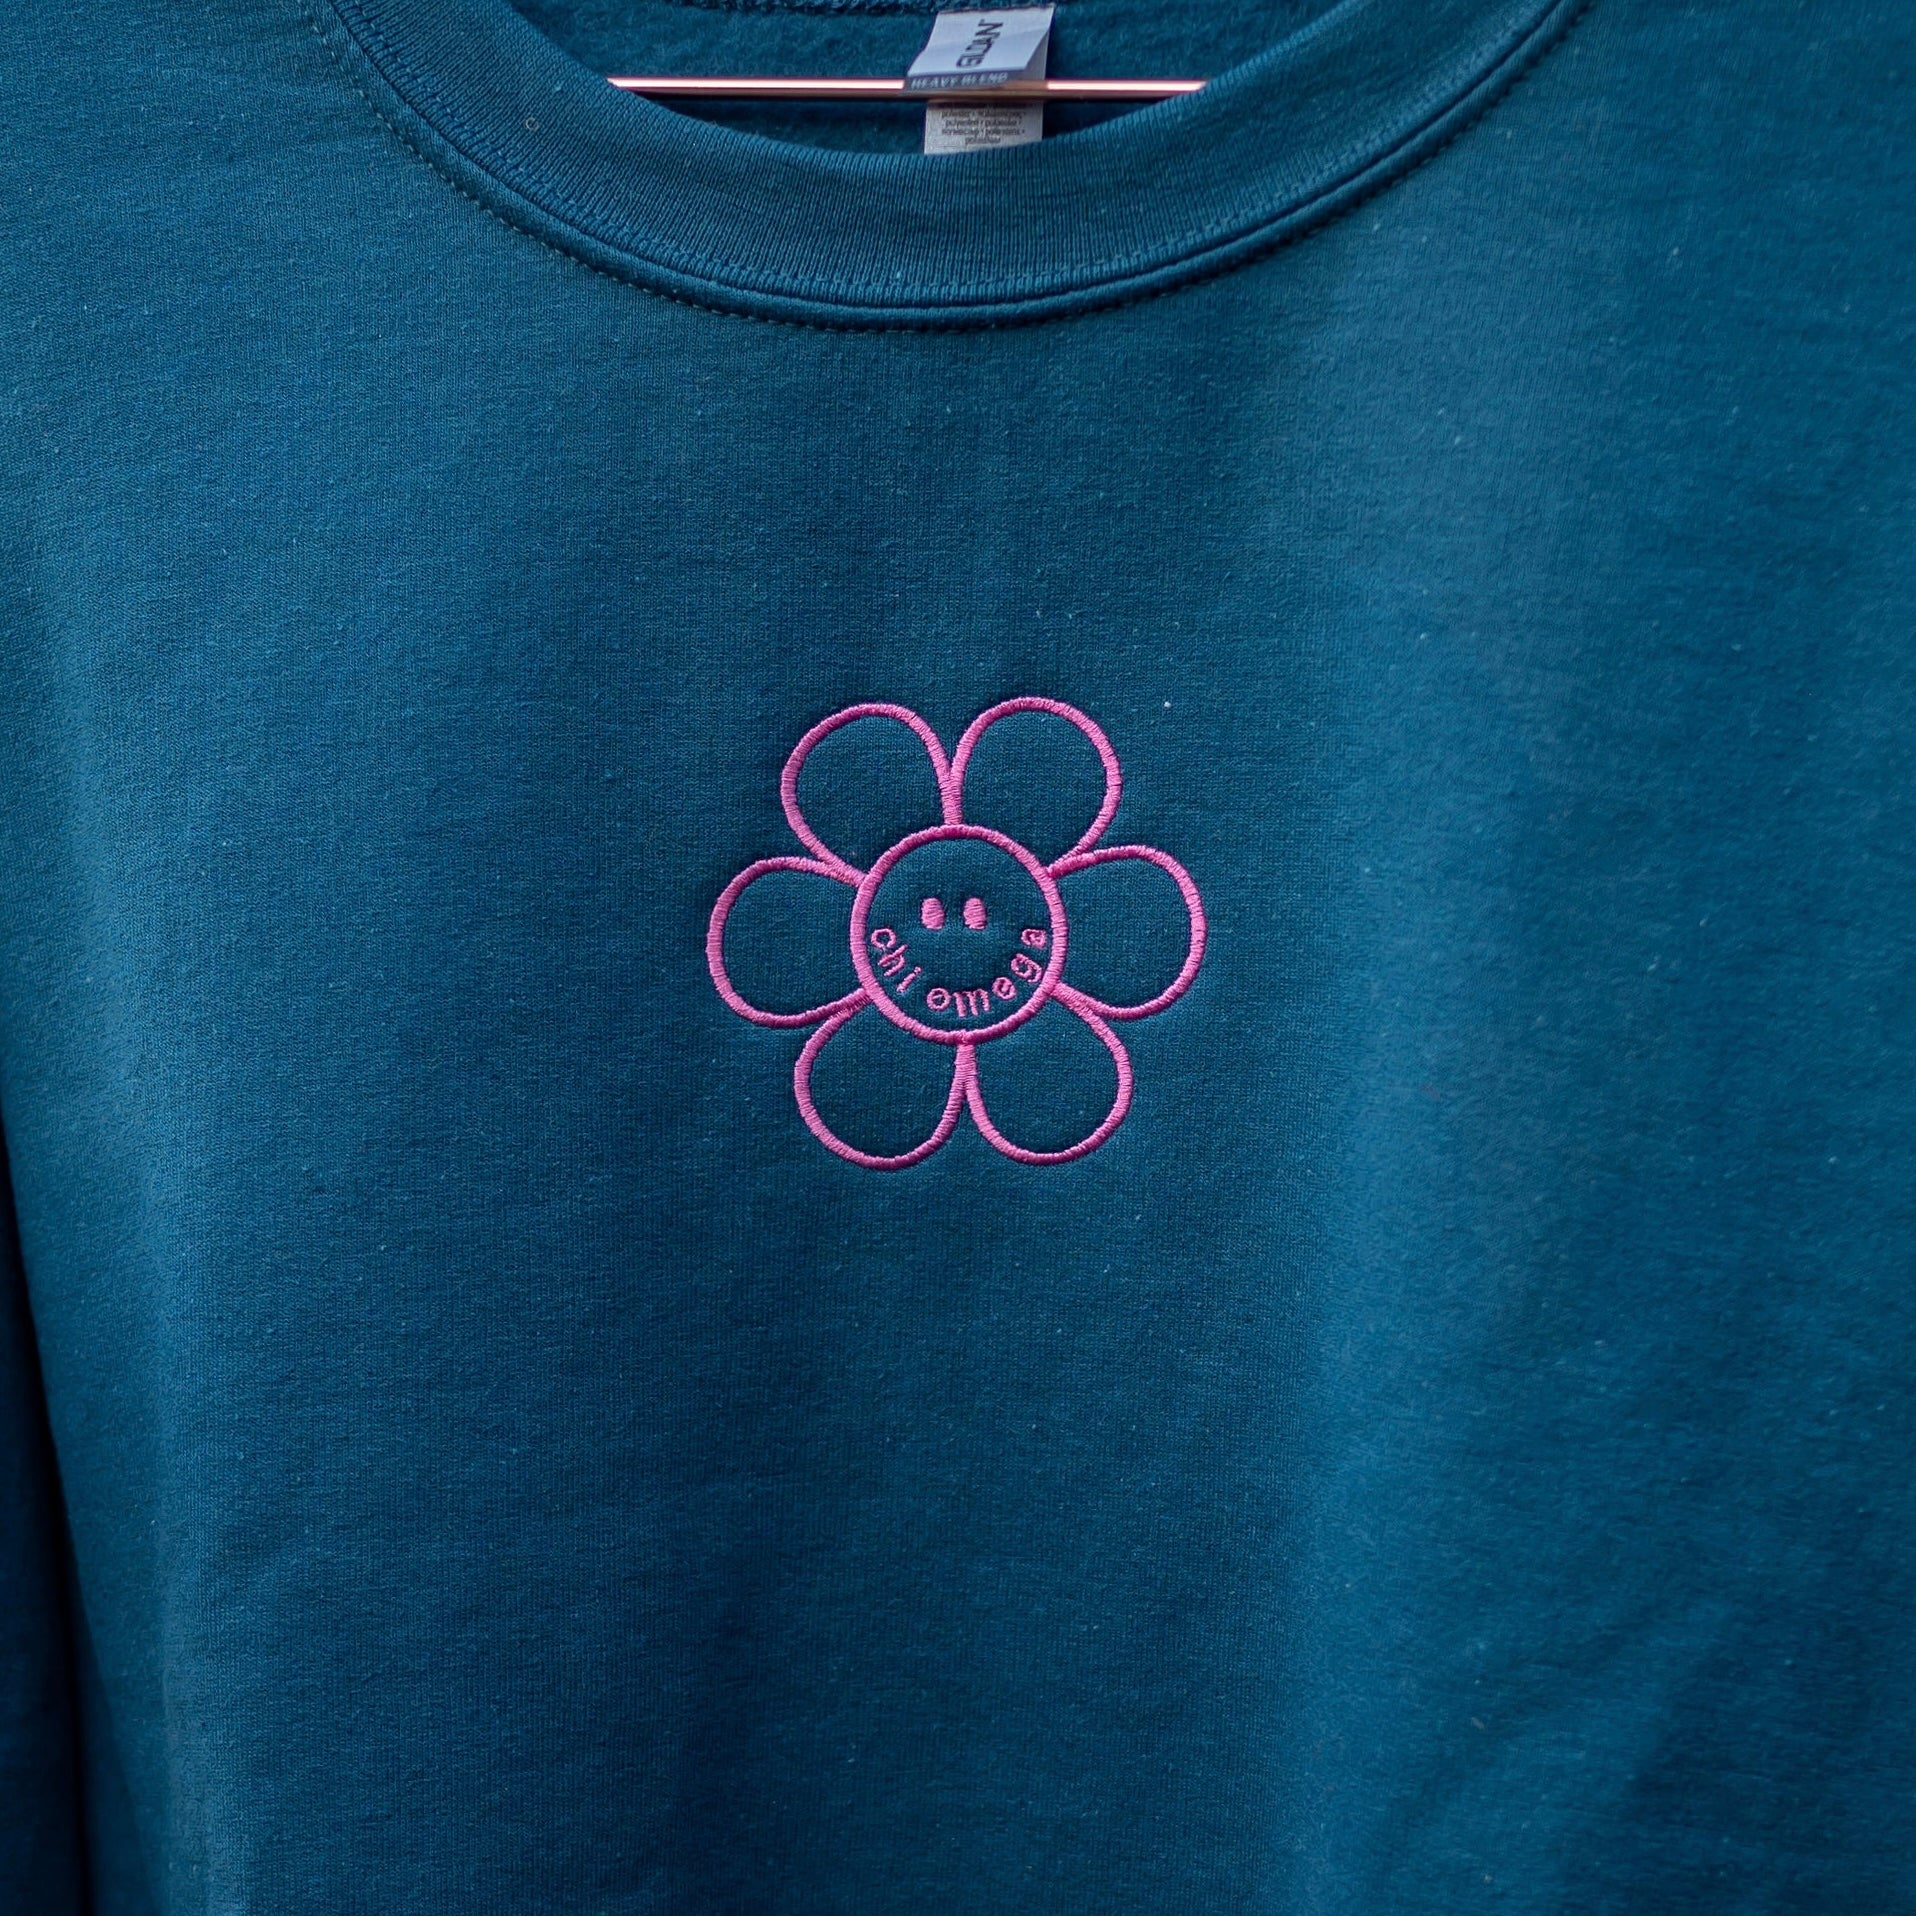 Flower Power Embroidered Crew Neck Sweatshirt